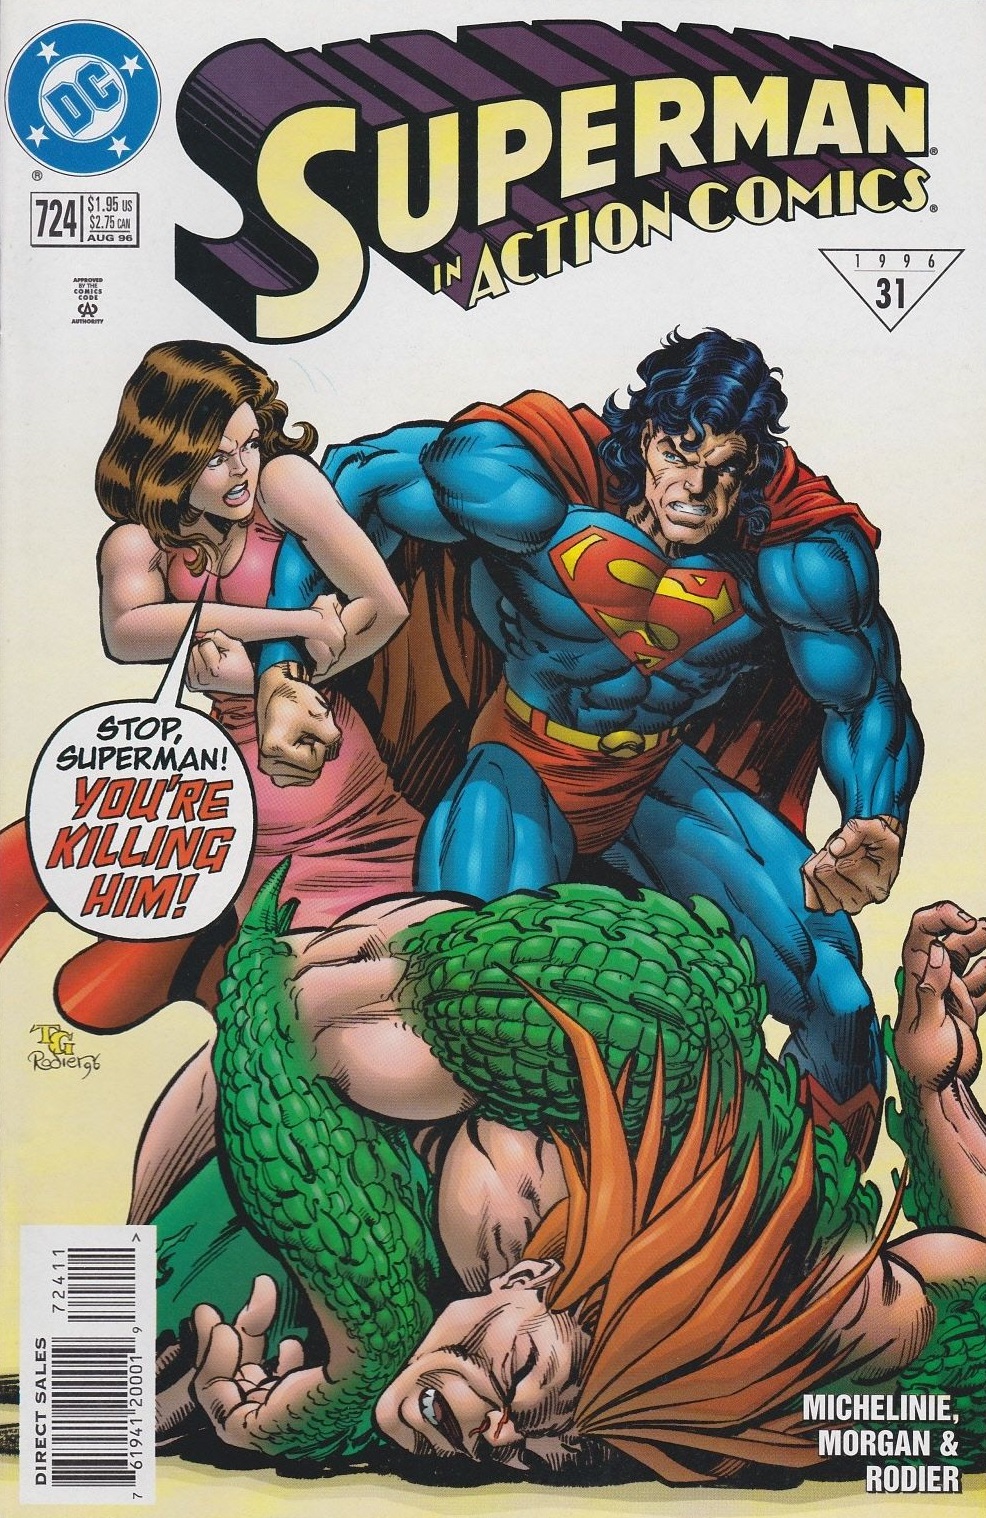 Action Comics Vol. 1 #724